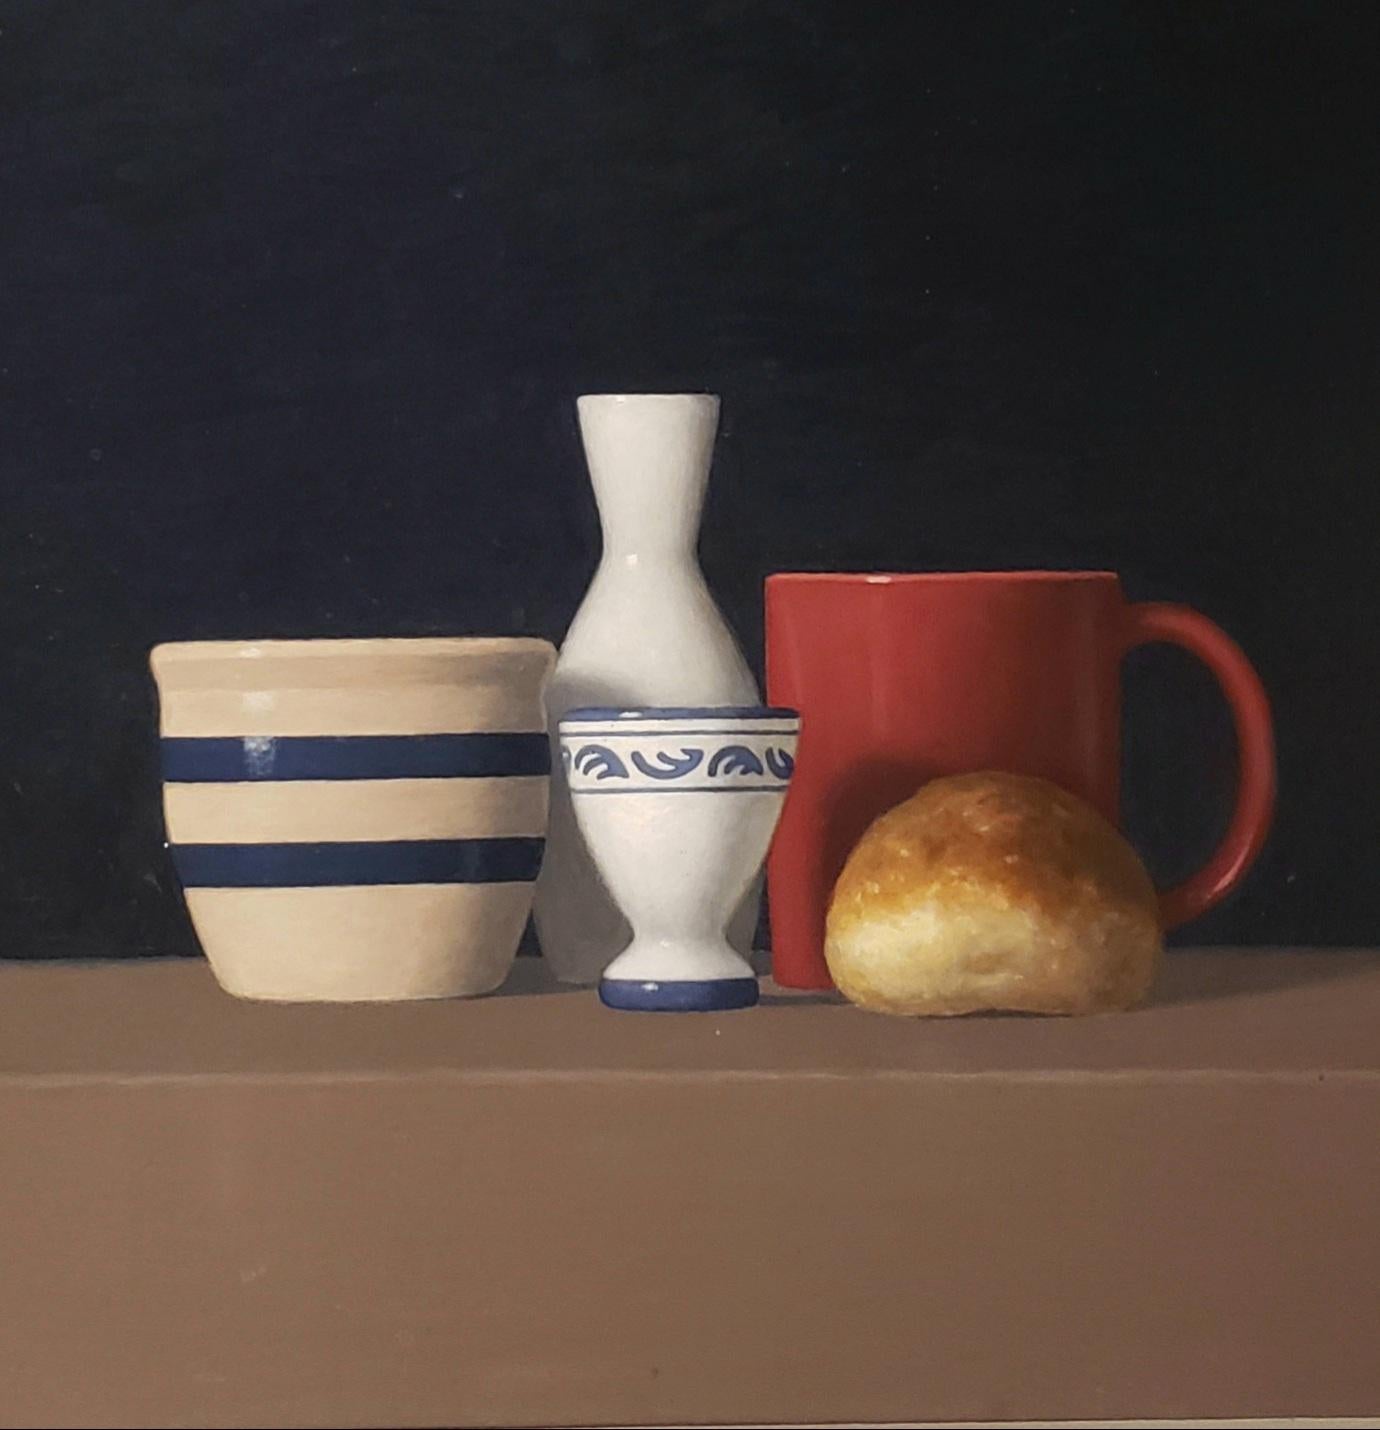 Roll with Four Objects, peinture à l'huile, réalisme, 24 x 24, livraison gratuite, réaliste - Noir Still-Life Painting par David Harrison